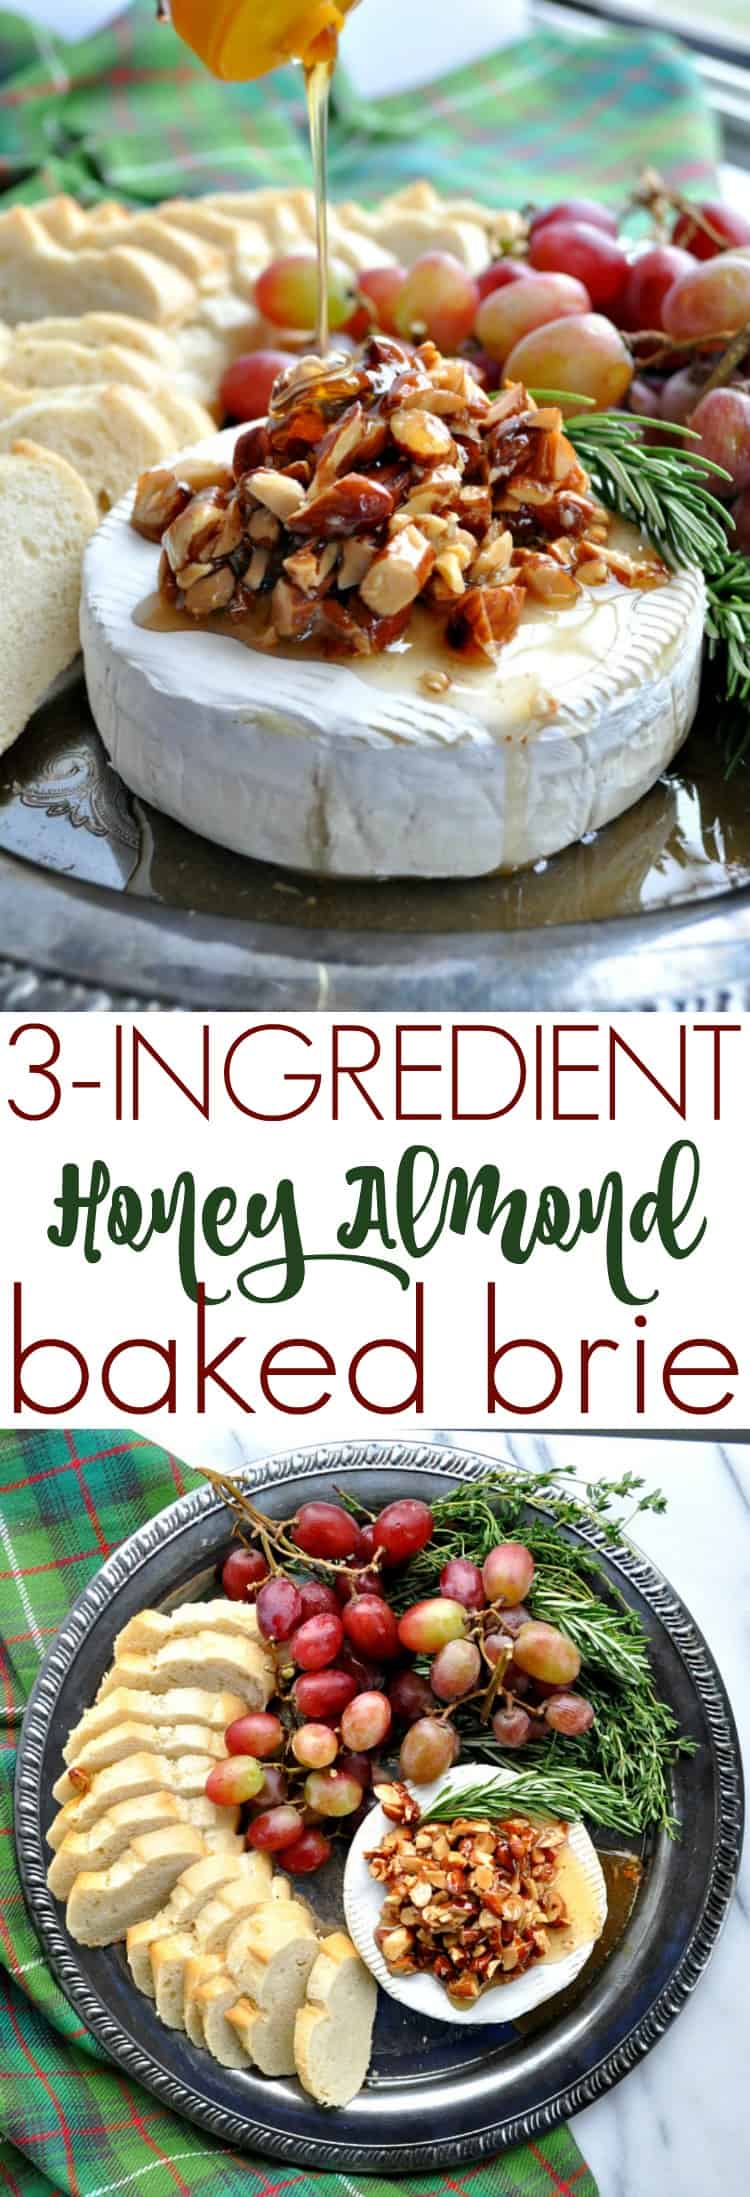 Honey Almond Baked Brie - The Seasoned Mom